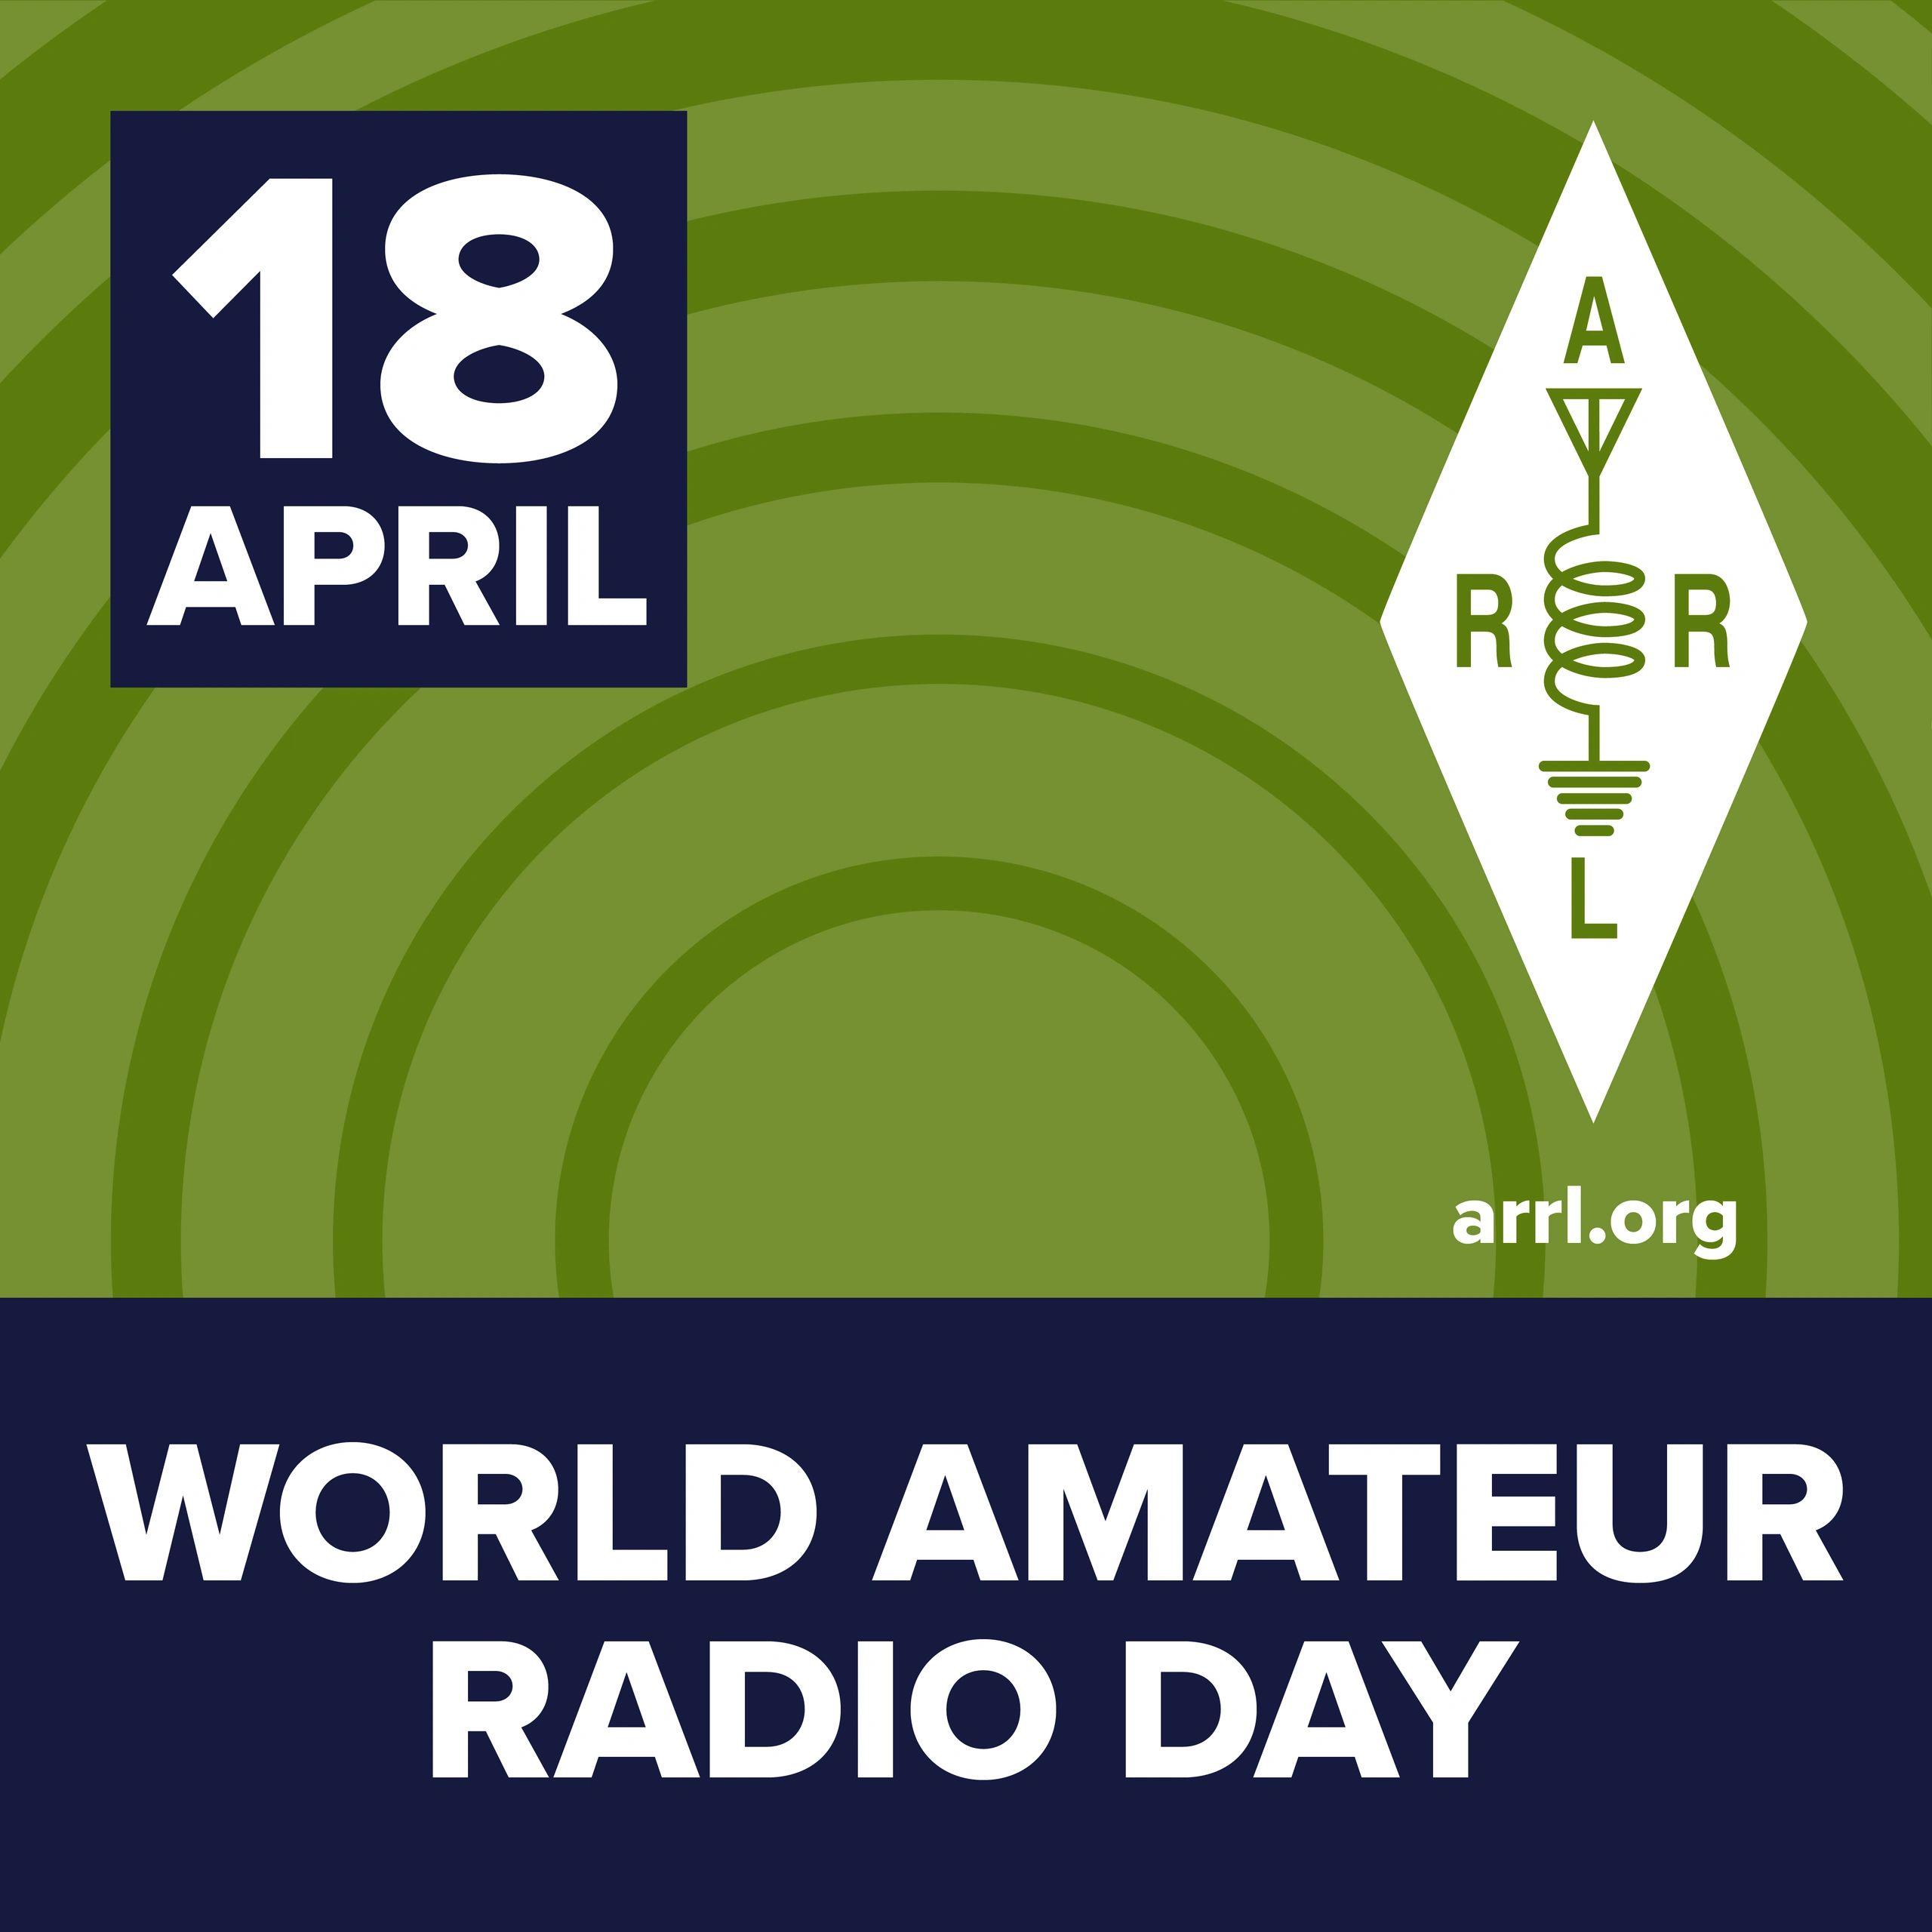 ▷ Día Mundial del Radioaficionado